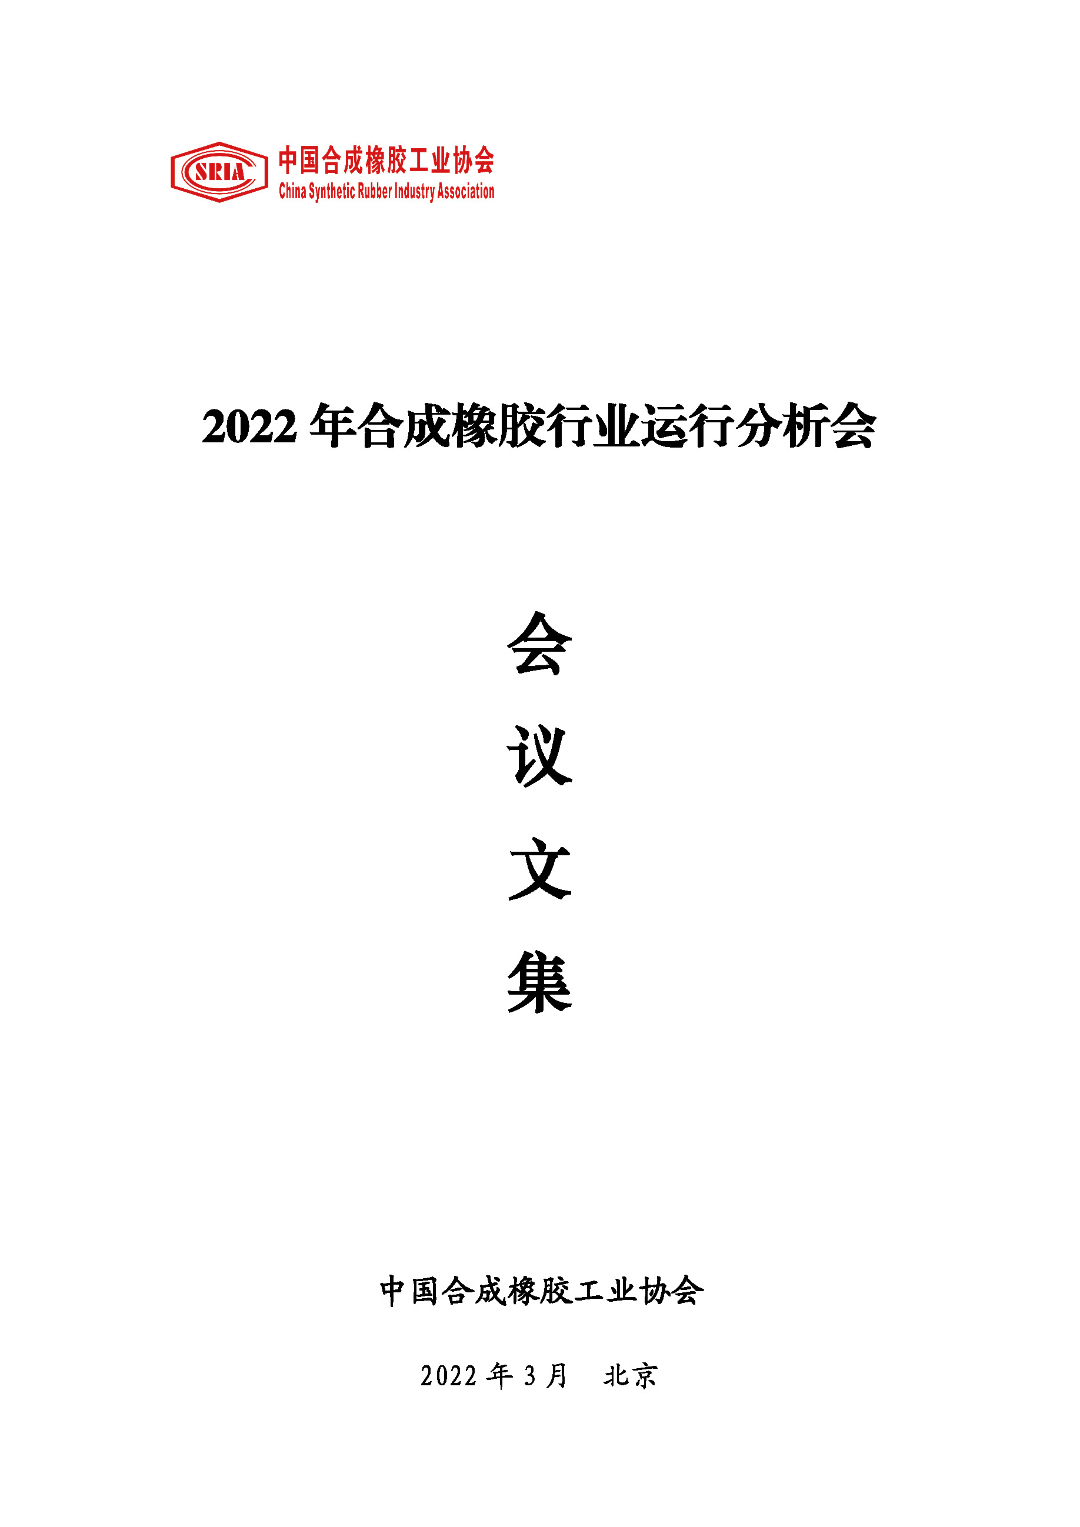 2022年合成橡胶行业运行分析会会议文集_封面.jpg